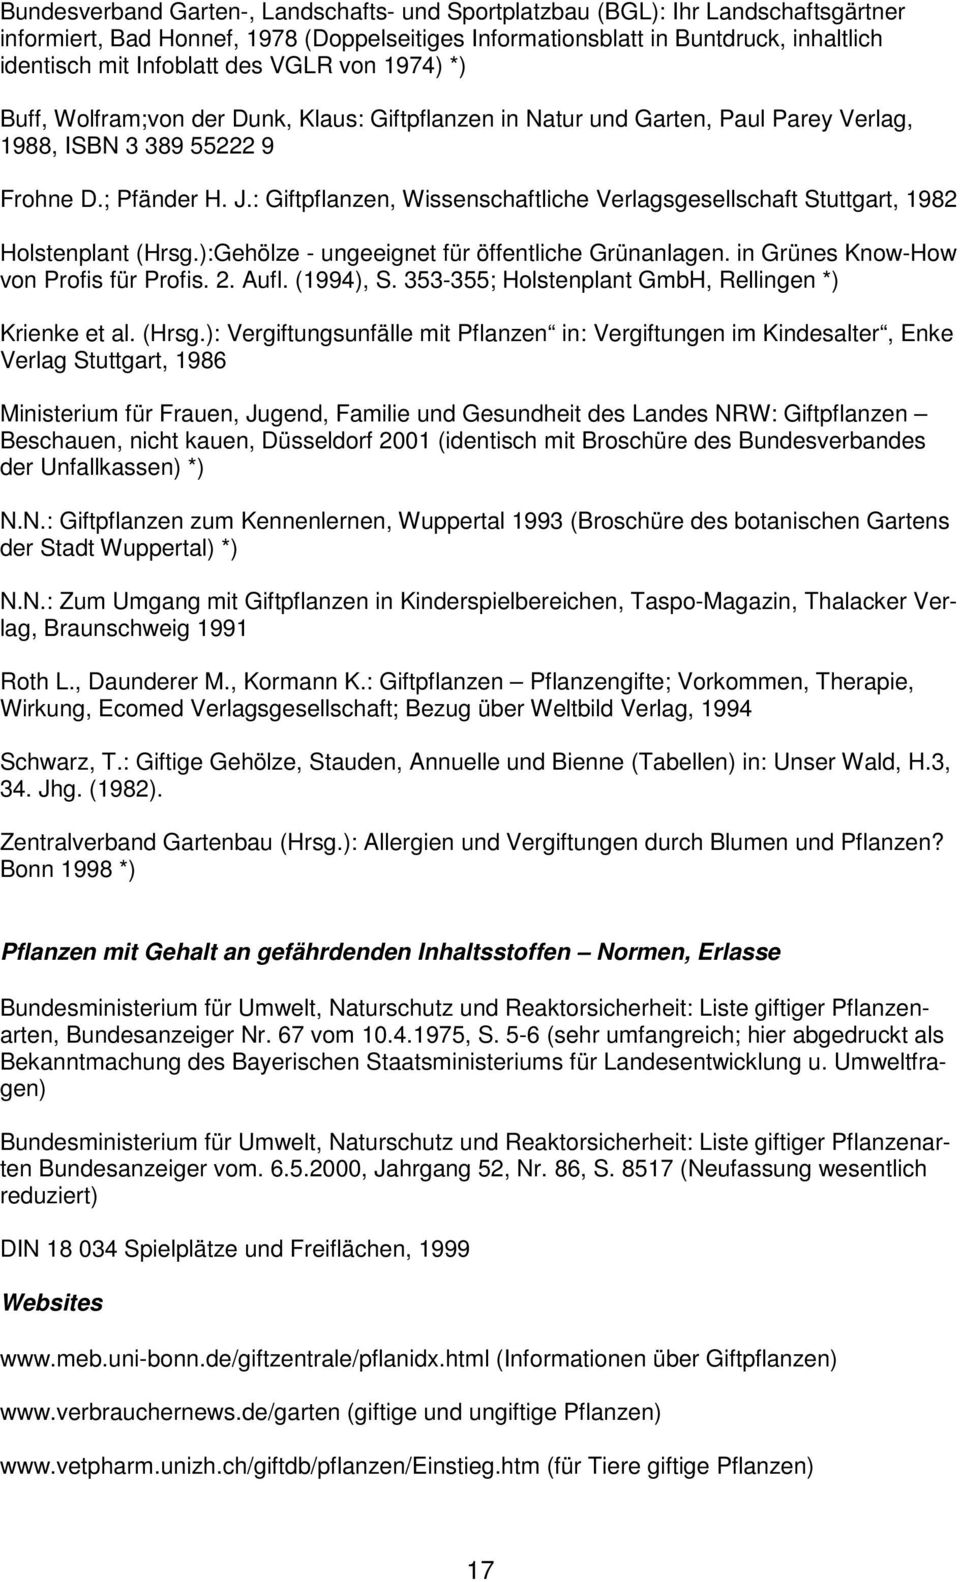 : Giftpflanzen, Wissenschaftliche Verlagsgesellschaft Stuttgart, 982 Holstenplant (Hrsg.):Gehölze - ungeeignet für öffentliche Grünanlagen. in Grünes Know-How von Profis für Profis. 2. Aufl. (994), S.